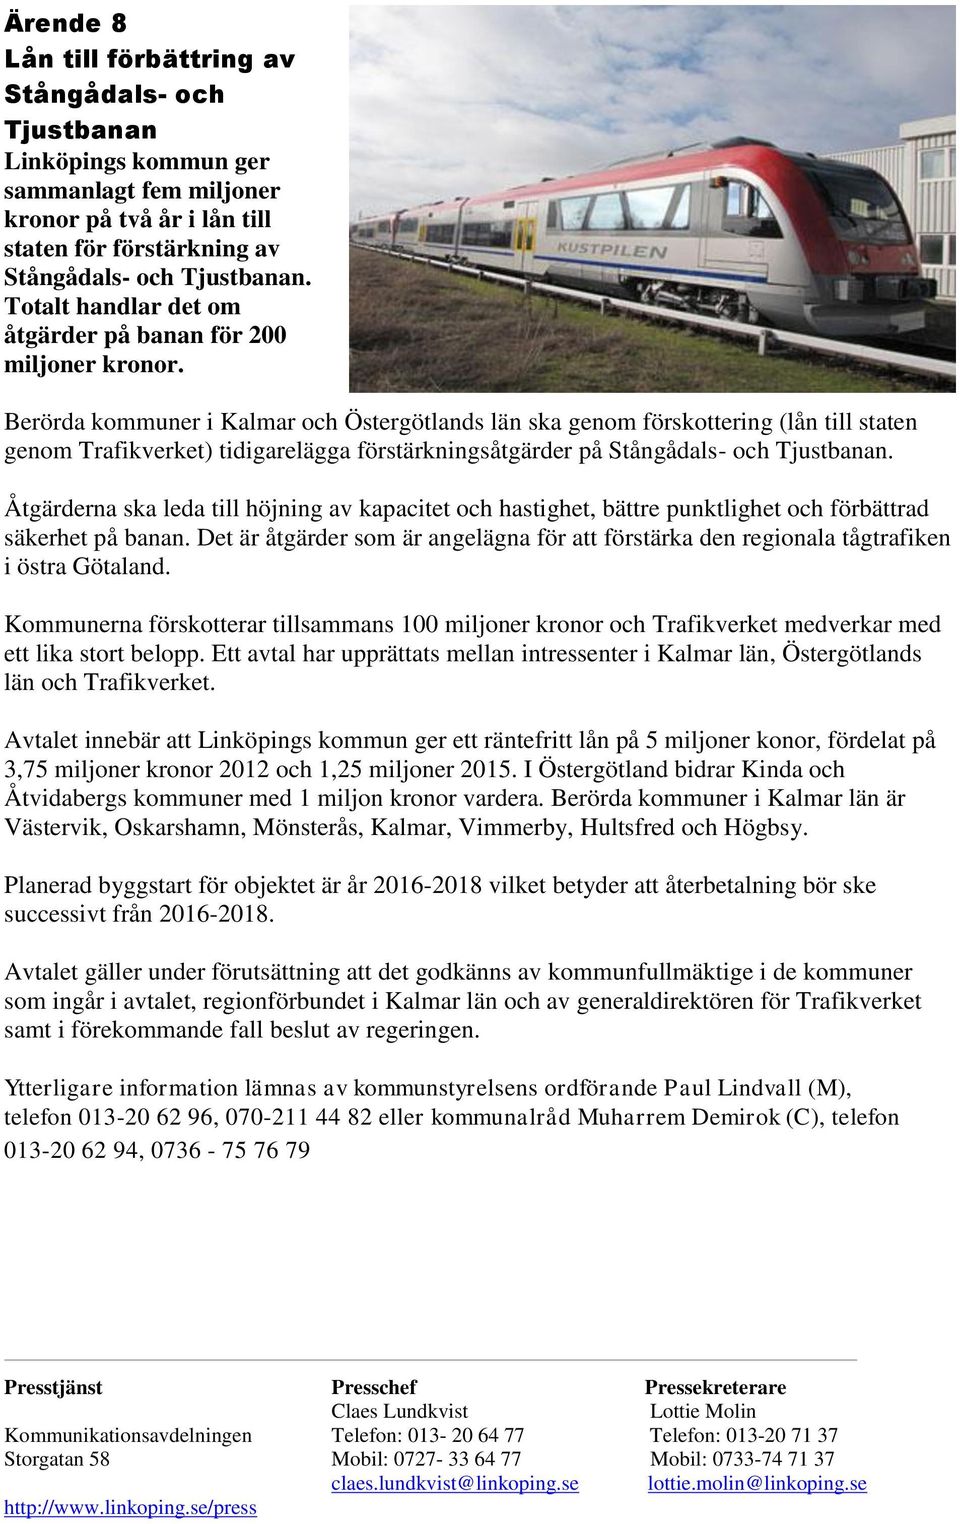 Berörda kommuner i Kalmar och Östergötlands län ska genom förskottering (lån till staten genom Trafikverket) tidigarelägga förstärkningsåtgärder på Stångådals- och Tjustbanan.